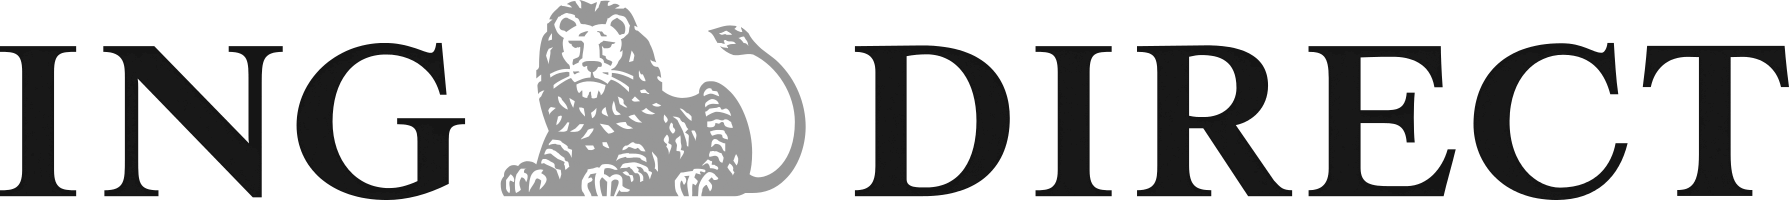 ING Direct Mortgage Lender Logo